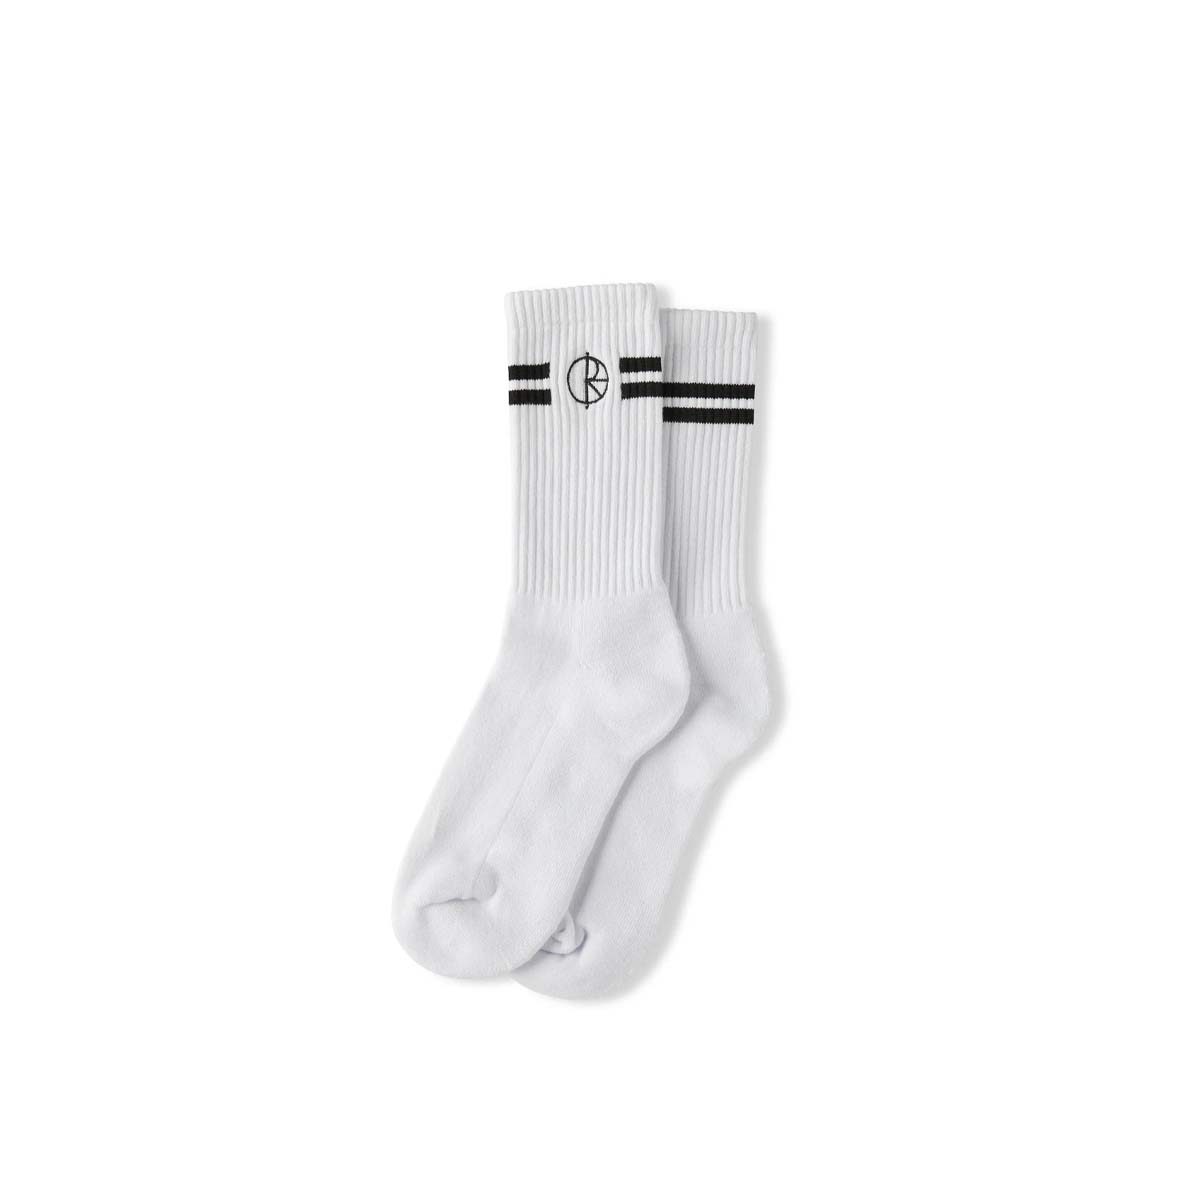 Polar Skate Co. Stroke Logo Socks (White) - Apple Valley Emporium